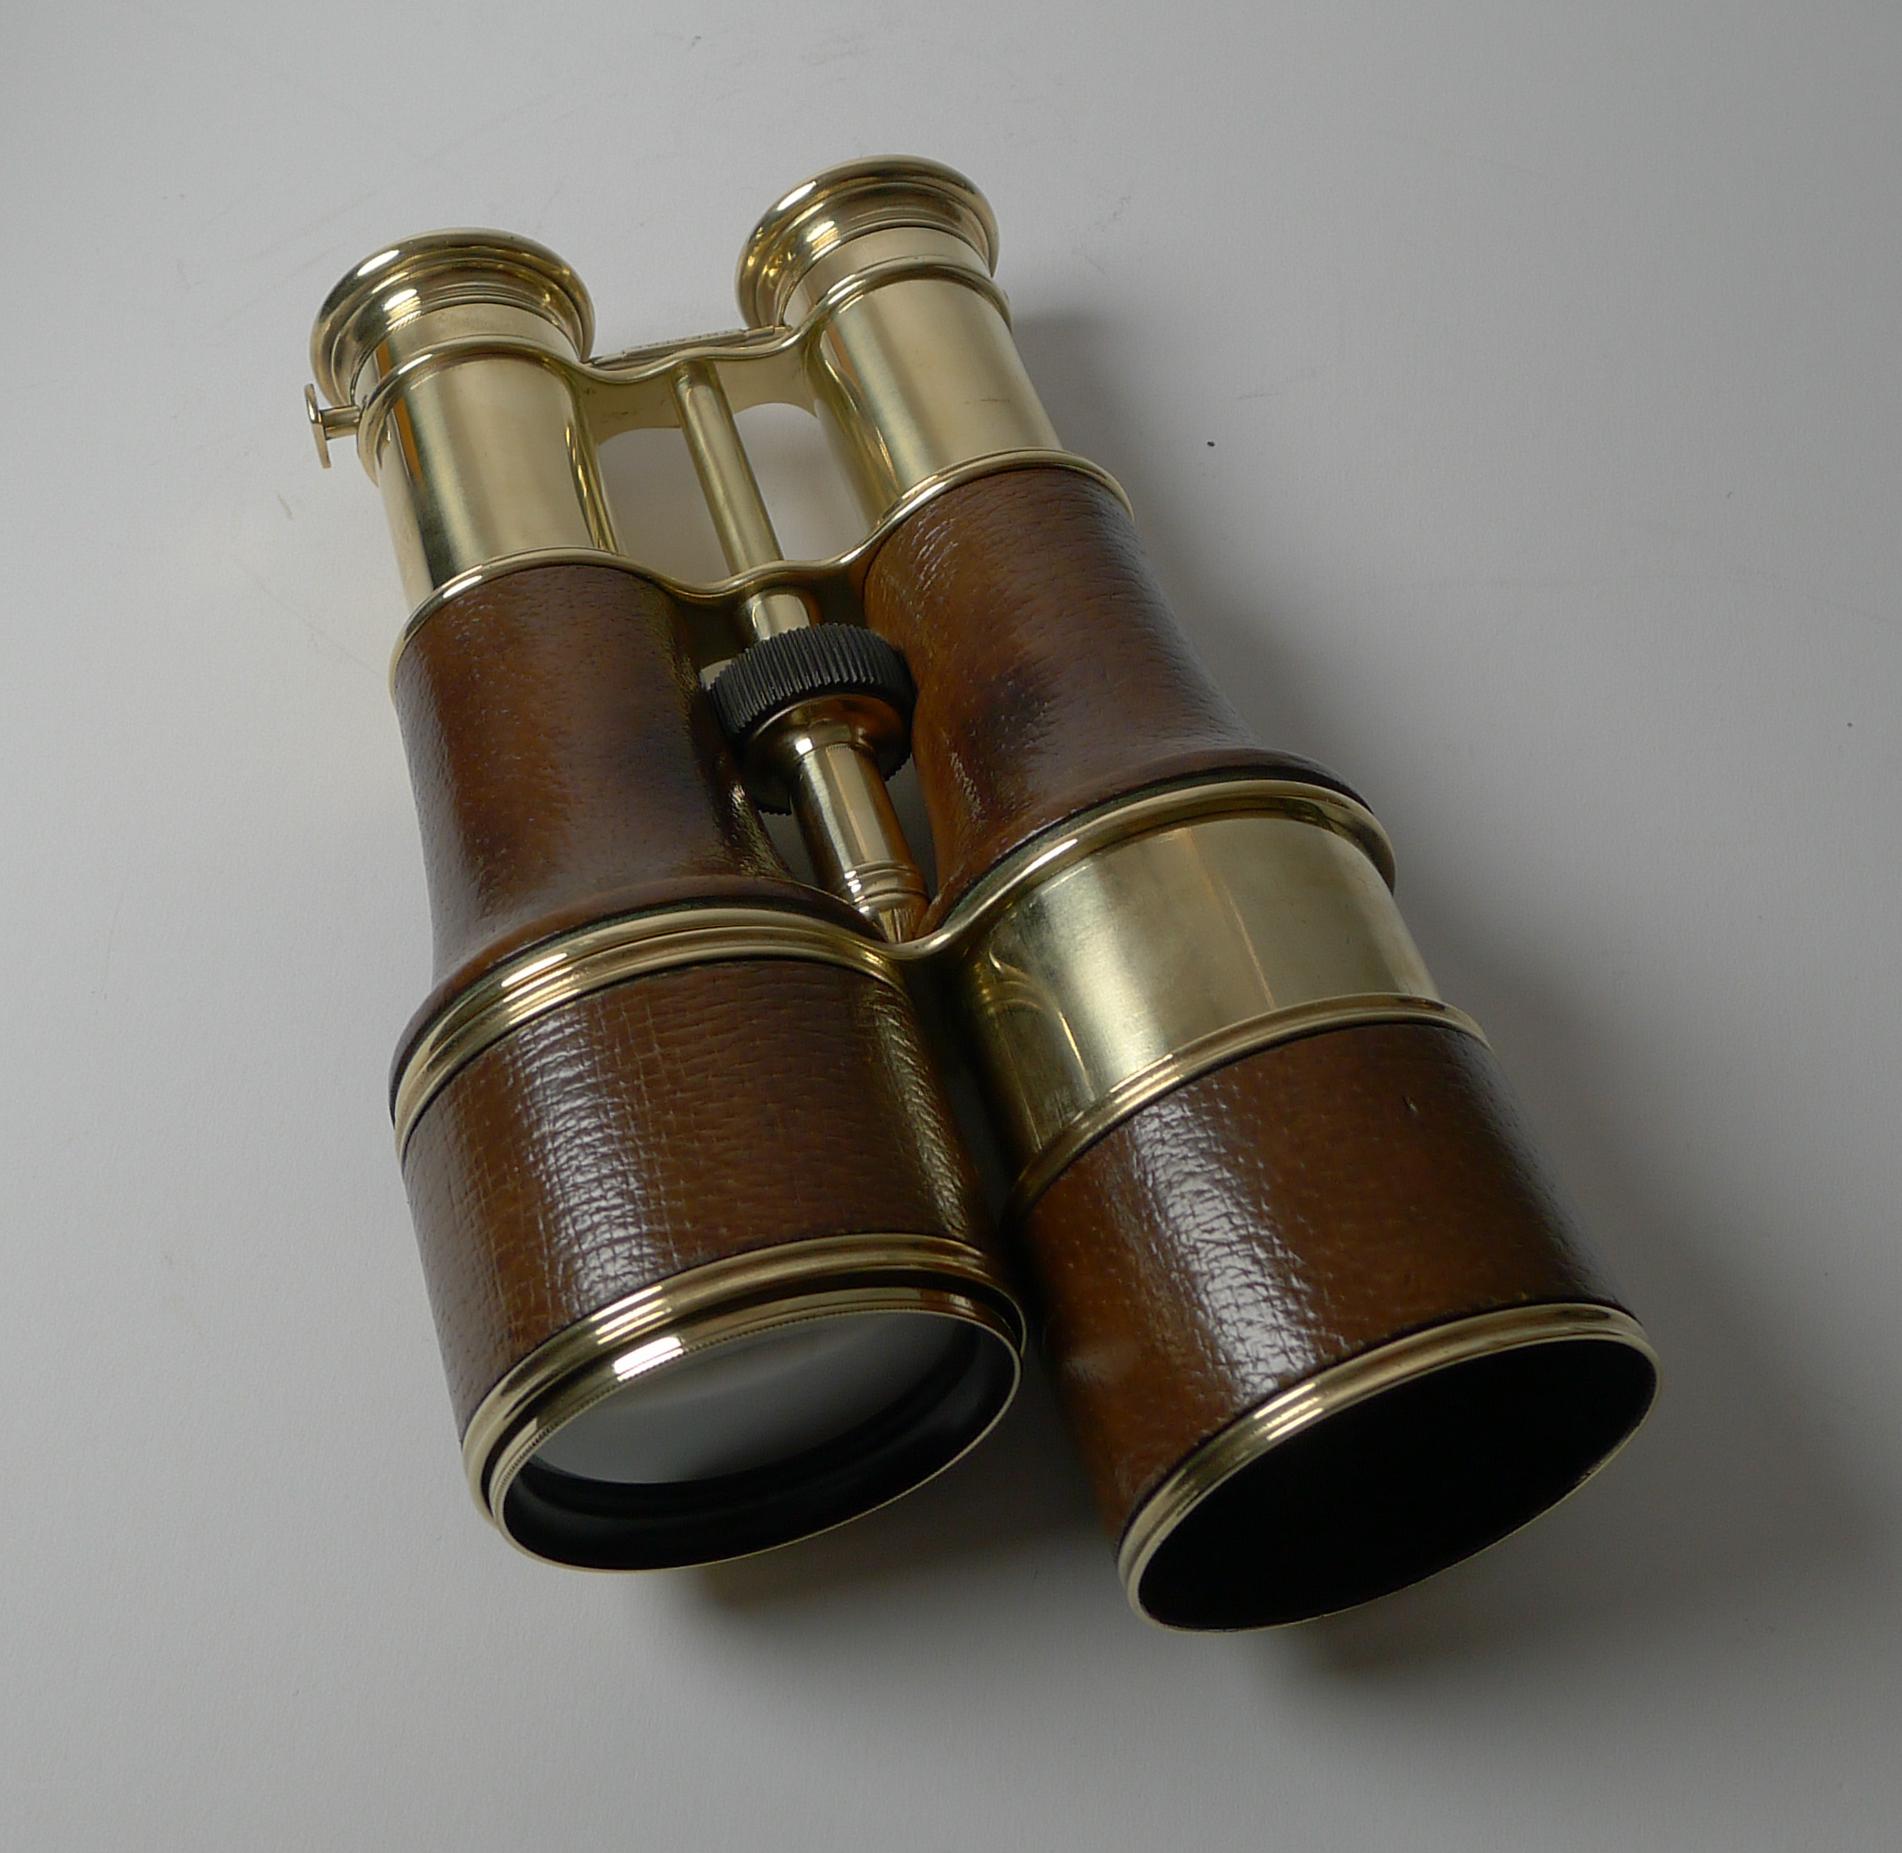 jumelle marine binoculars